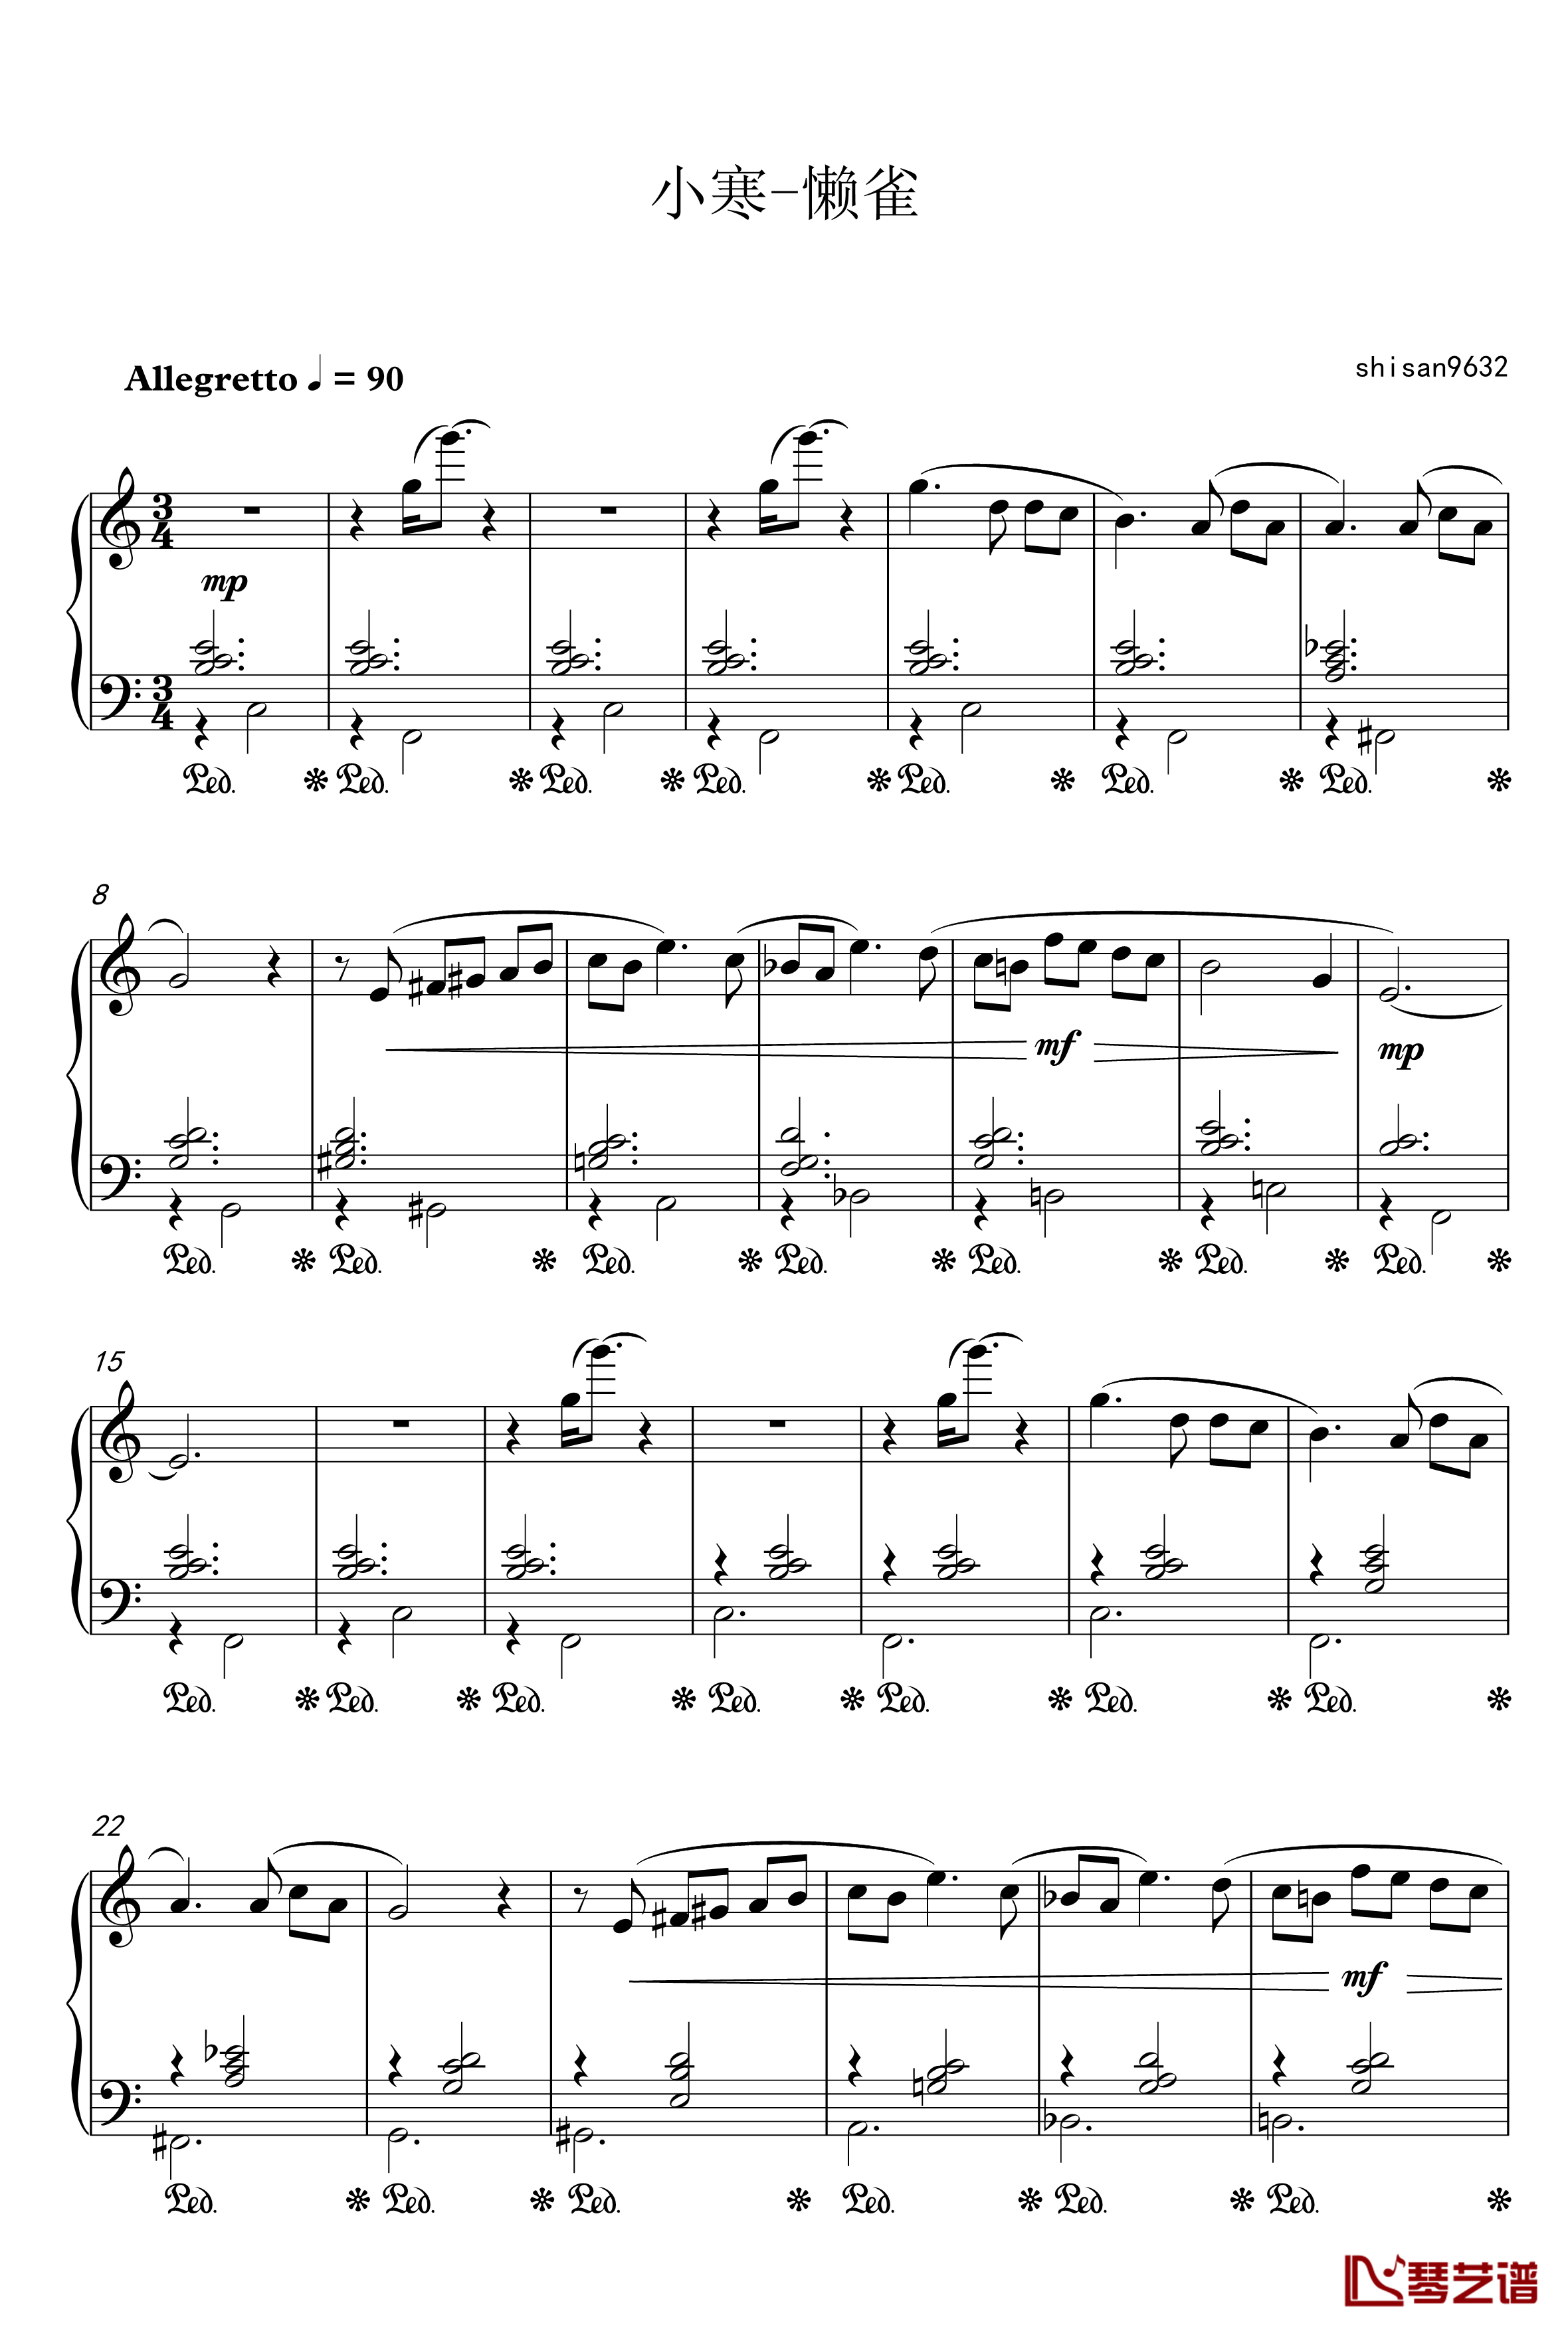 懒雀钢琴谱-shisan9632-小寒1